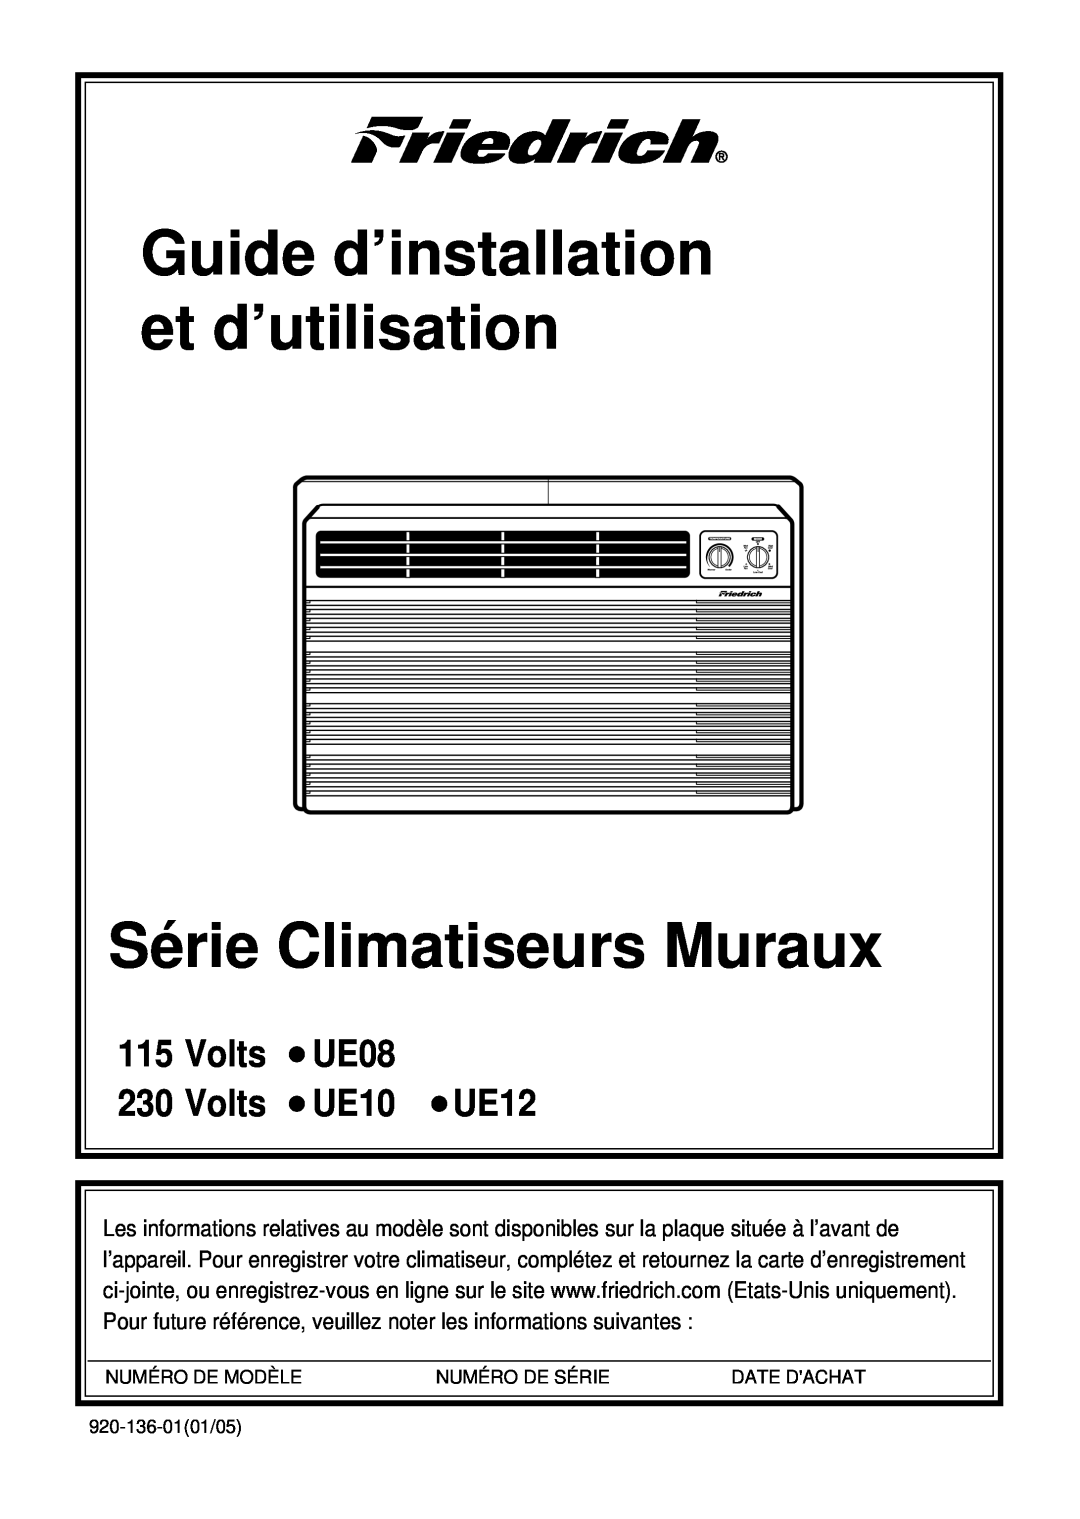 Friedrich Guide d’installation et d’utilisation Série Climatiseurs Muraux, Volts UE08 230 Volts UE10 UE12, Date Dachat 